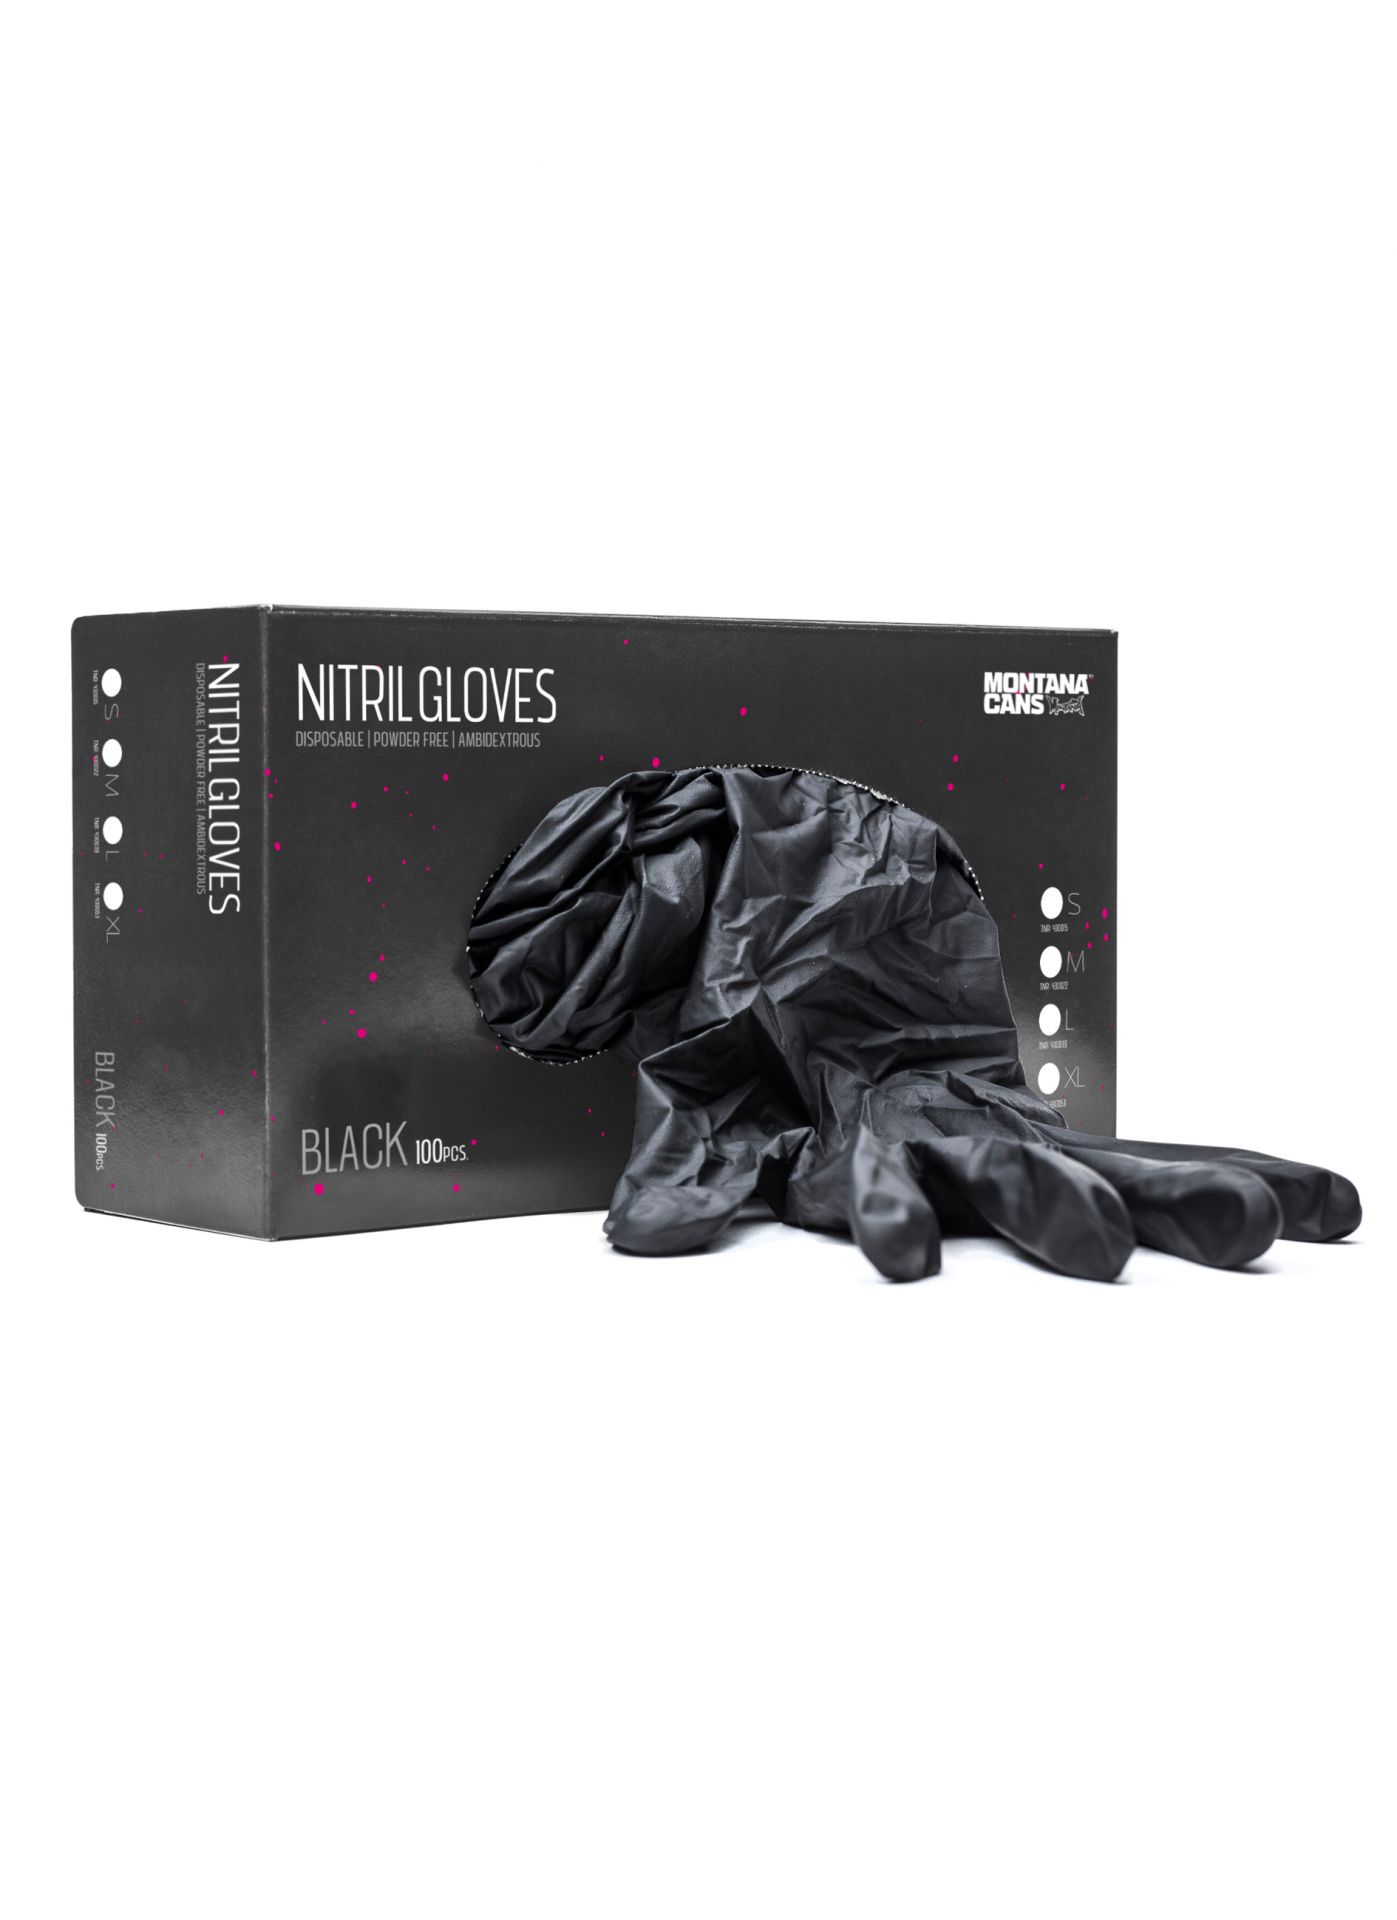 Montana Nitril Gloves - 100er Box